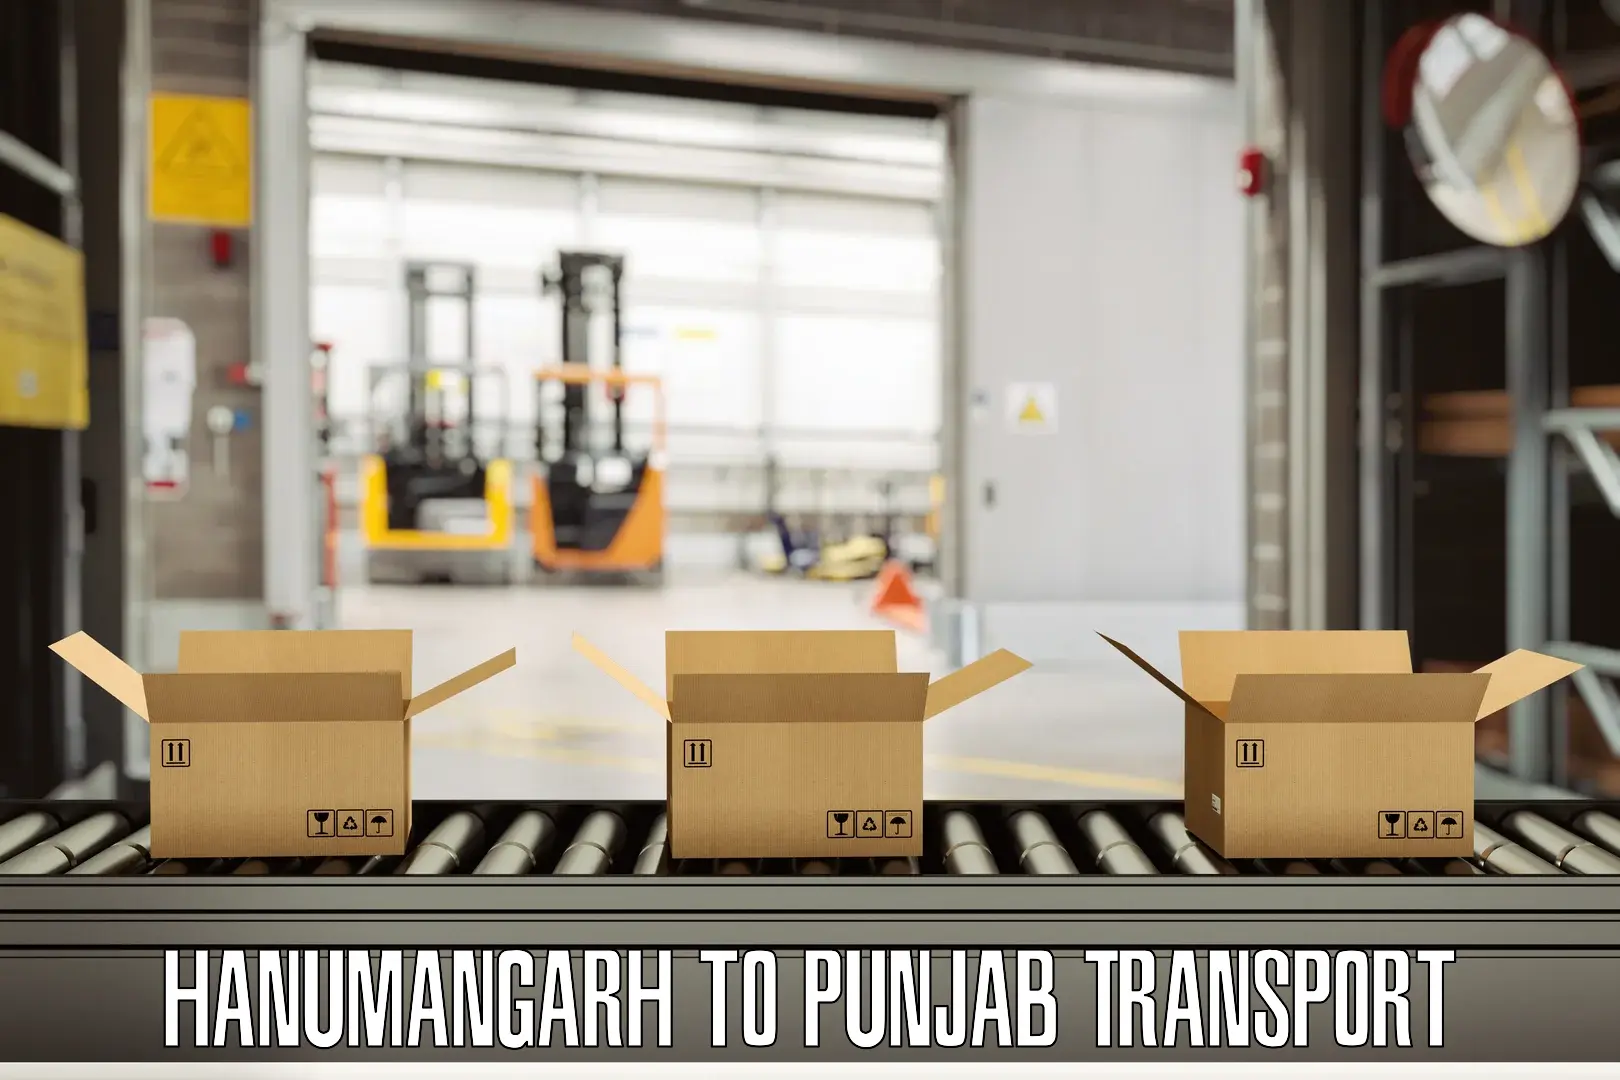 Vehicle transport services Hanumangarh to Punjab